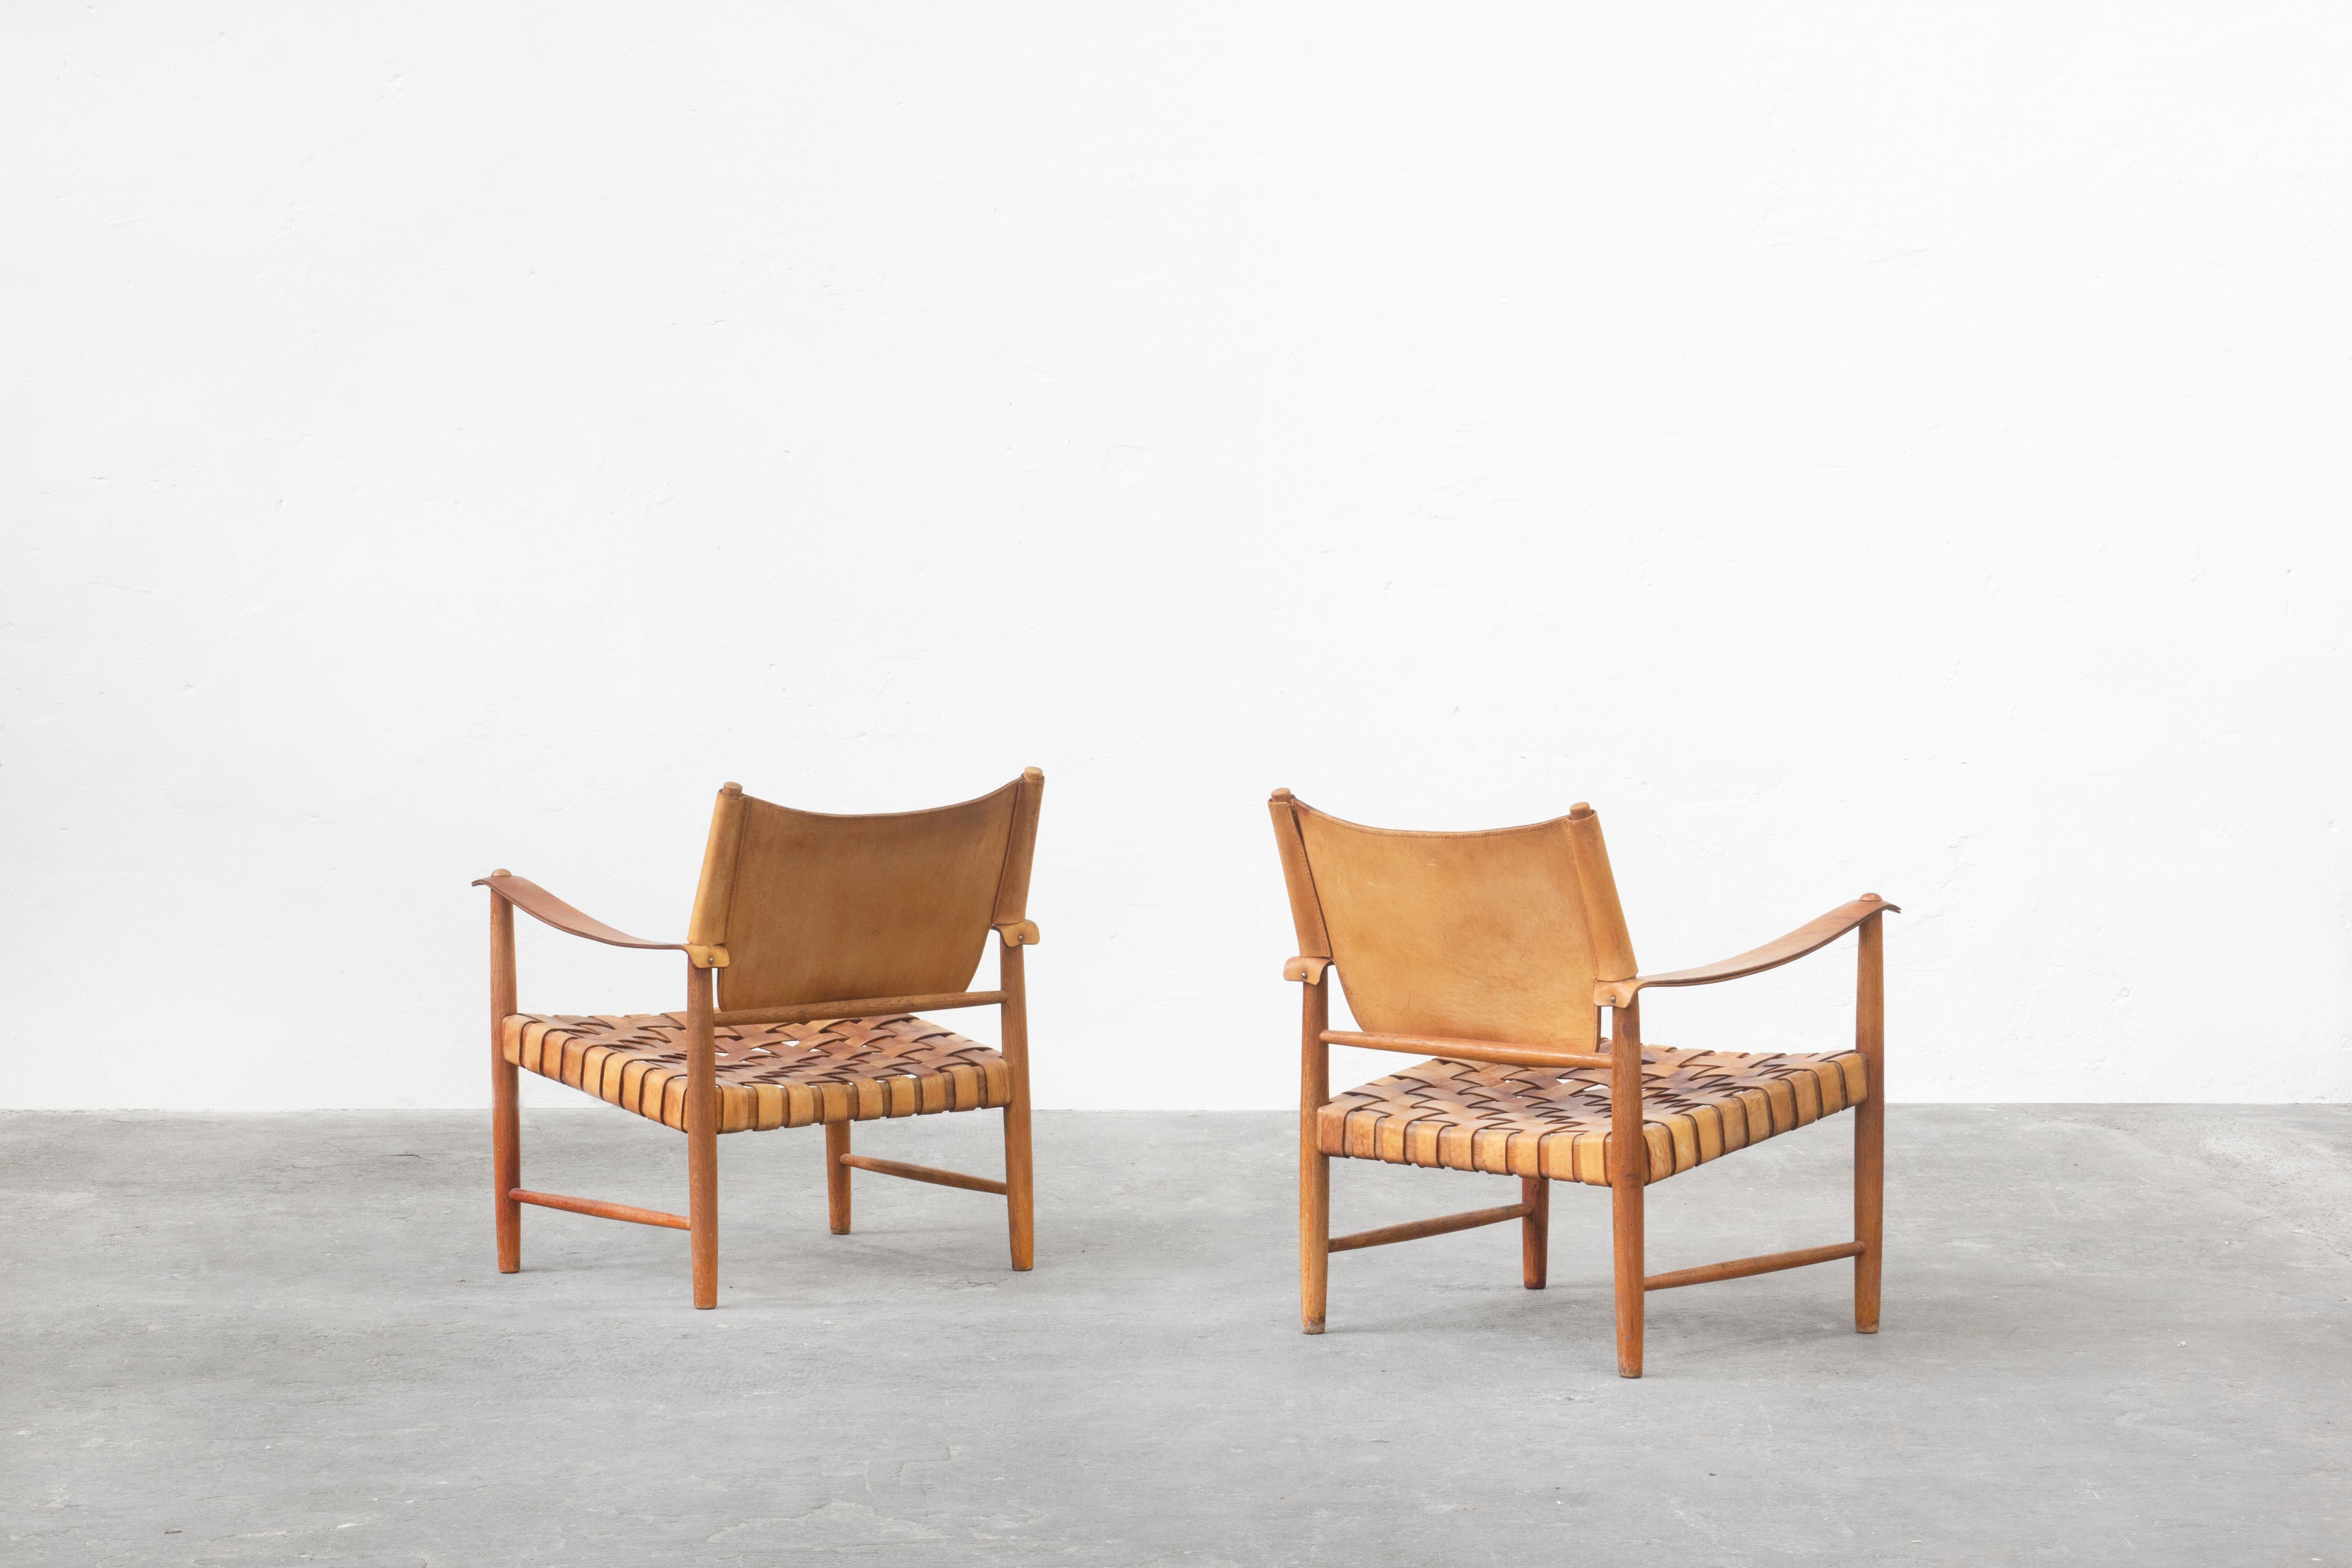 Sehr schöne Sessel aus Eiche und braun-cognacfarbenem Leder, hergestellt in Deutschland in den 1950er Jahren. 
Beide Stühle sind in sehr gutem Vintage-Zustand mit Gebrauchsspuren und schön patiniertem Leder und Eichengestell. 

Absolut selten und